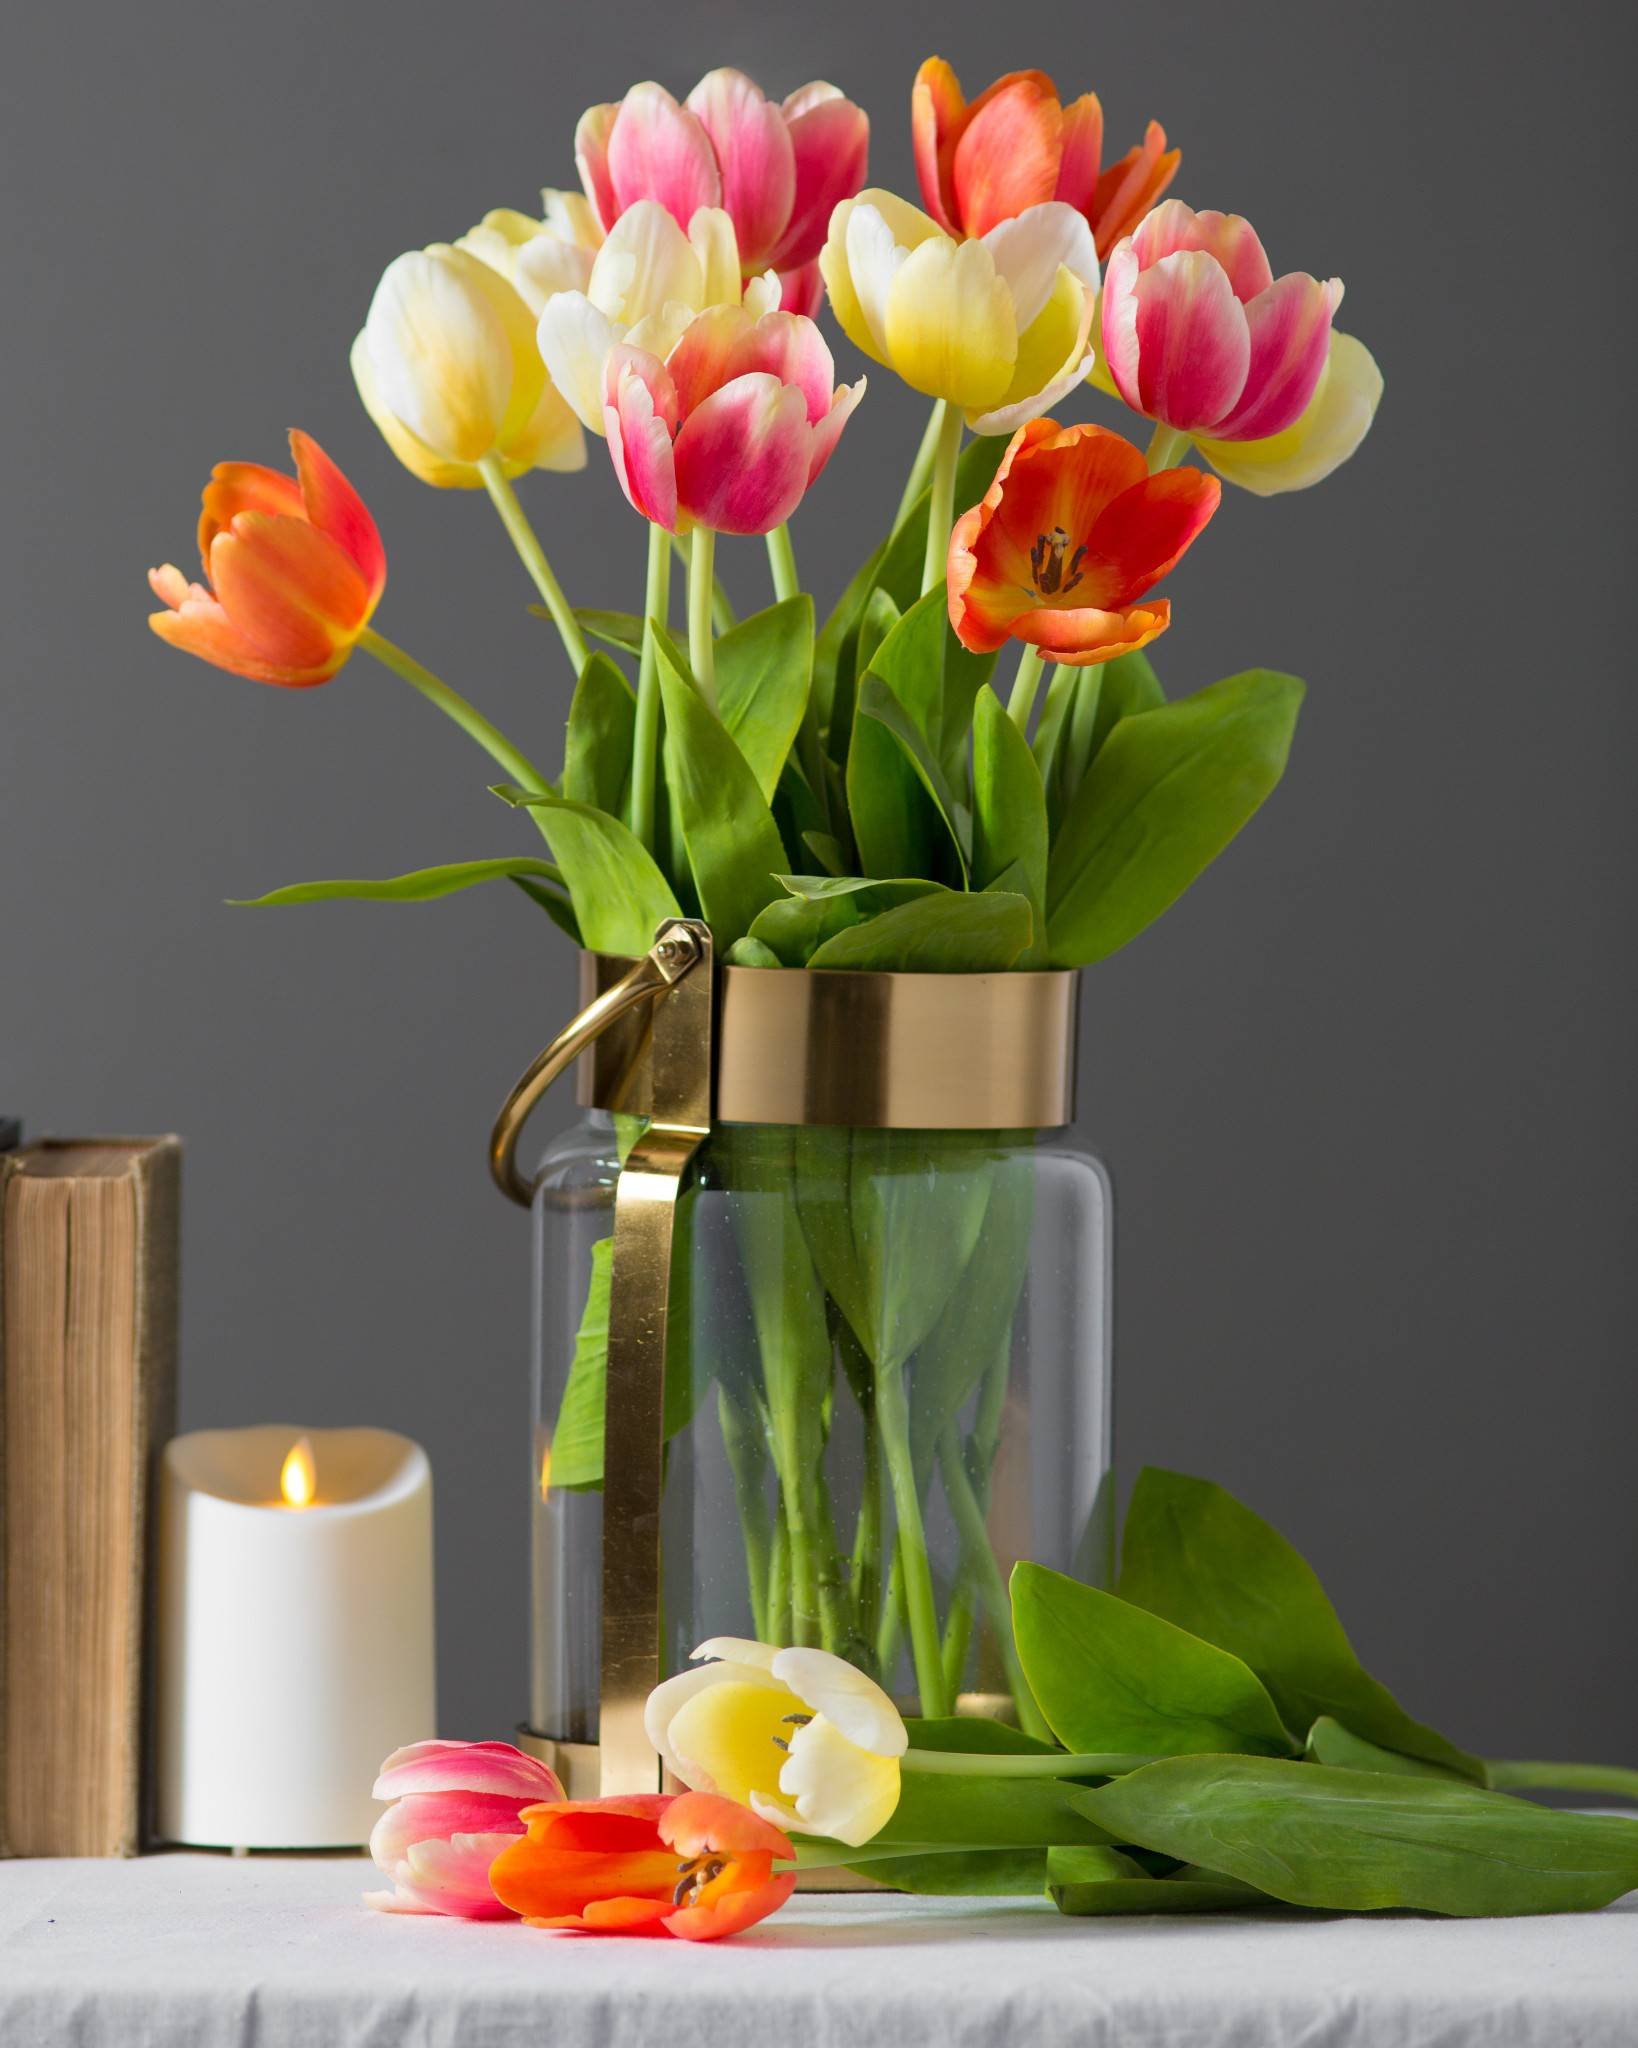 Фото тюльпаны в вазе на столе. Тюльпаны в вазе. Тюльпаны в стеклянной вазе. Дульбаны в ваззе. Тюльпаны в вазах.